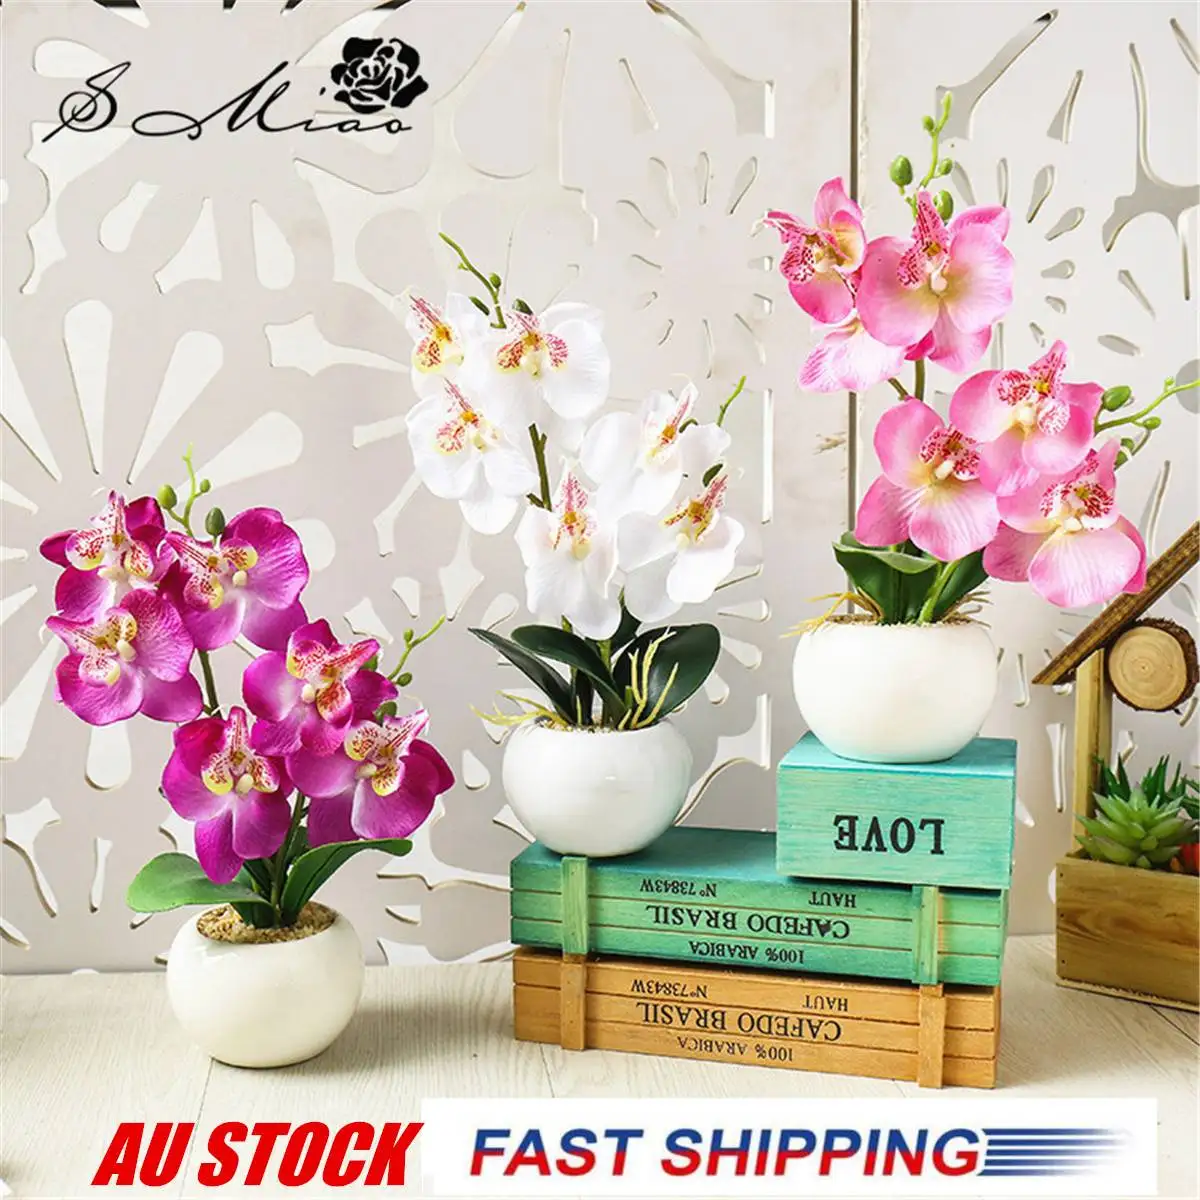 1 набор фаленопсис имитация бонсай искусственный цветок+ керамический горшок декоративный цветочный набор домашний стол аксессуары для спальни